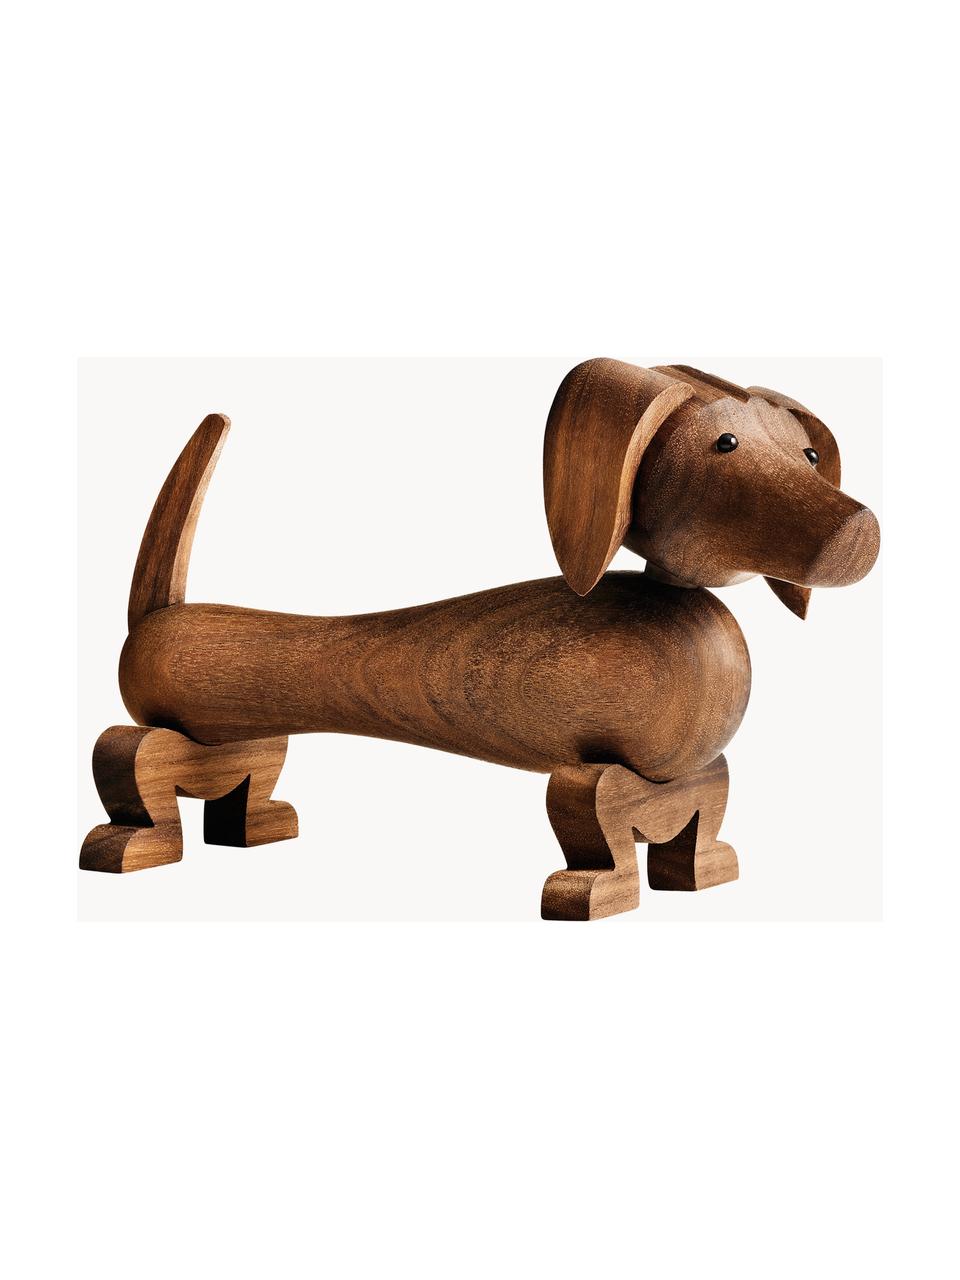 Dekoracja z drewna orzecha włoskiego Hund, Drewno orzecha włoskiego, Brązowy, D 20 x W 10 cm